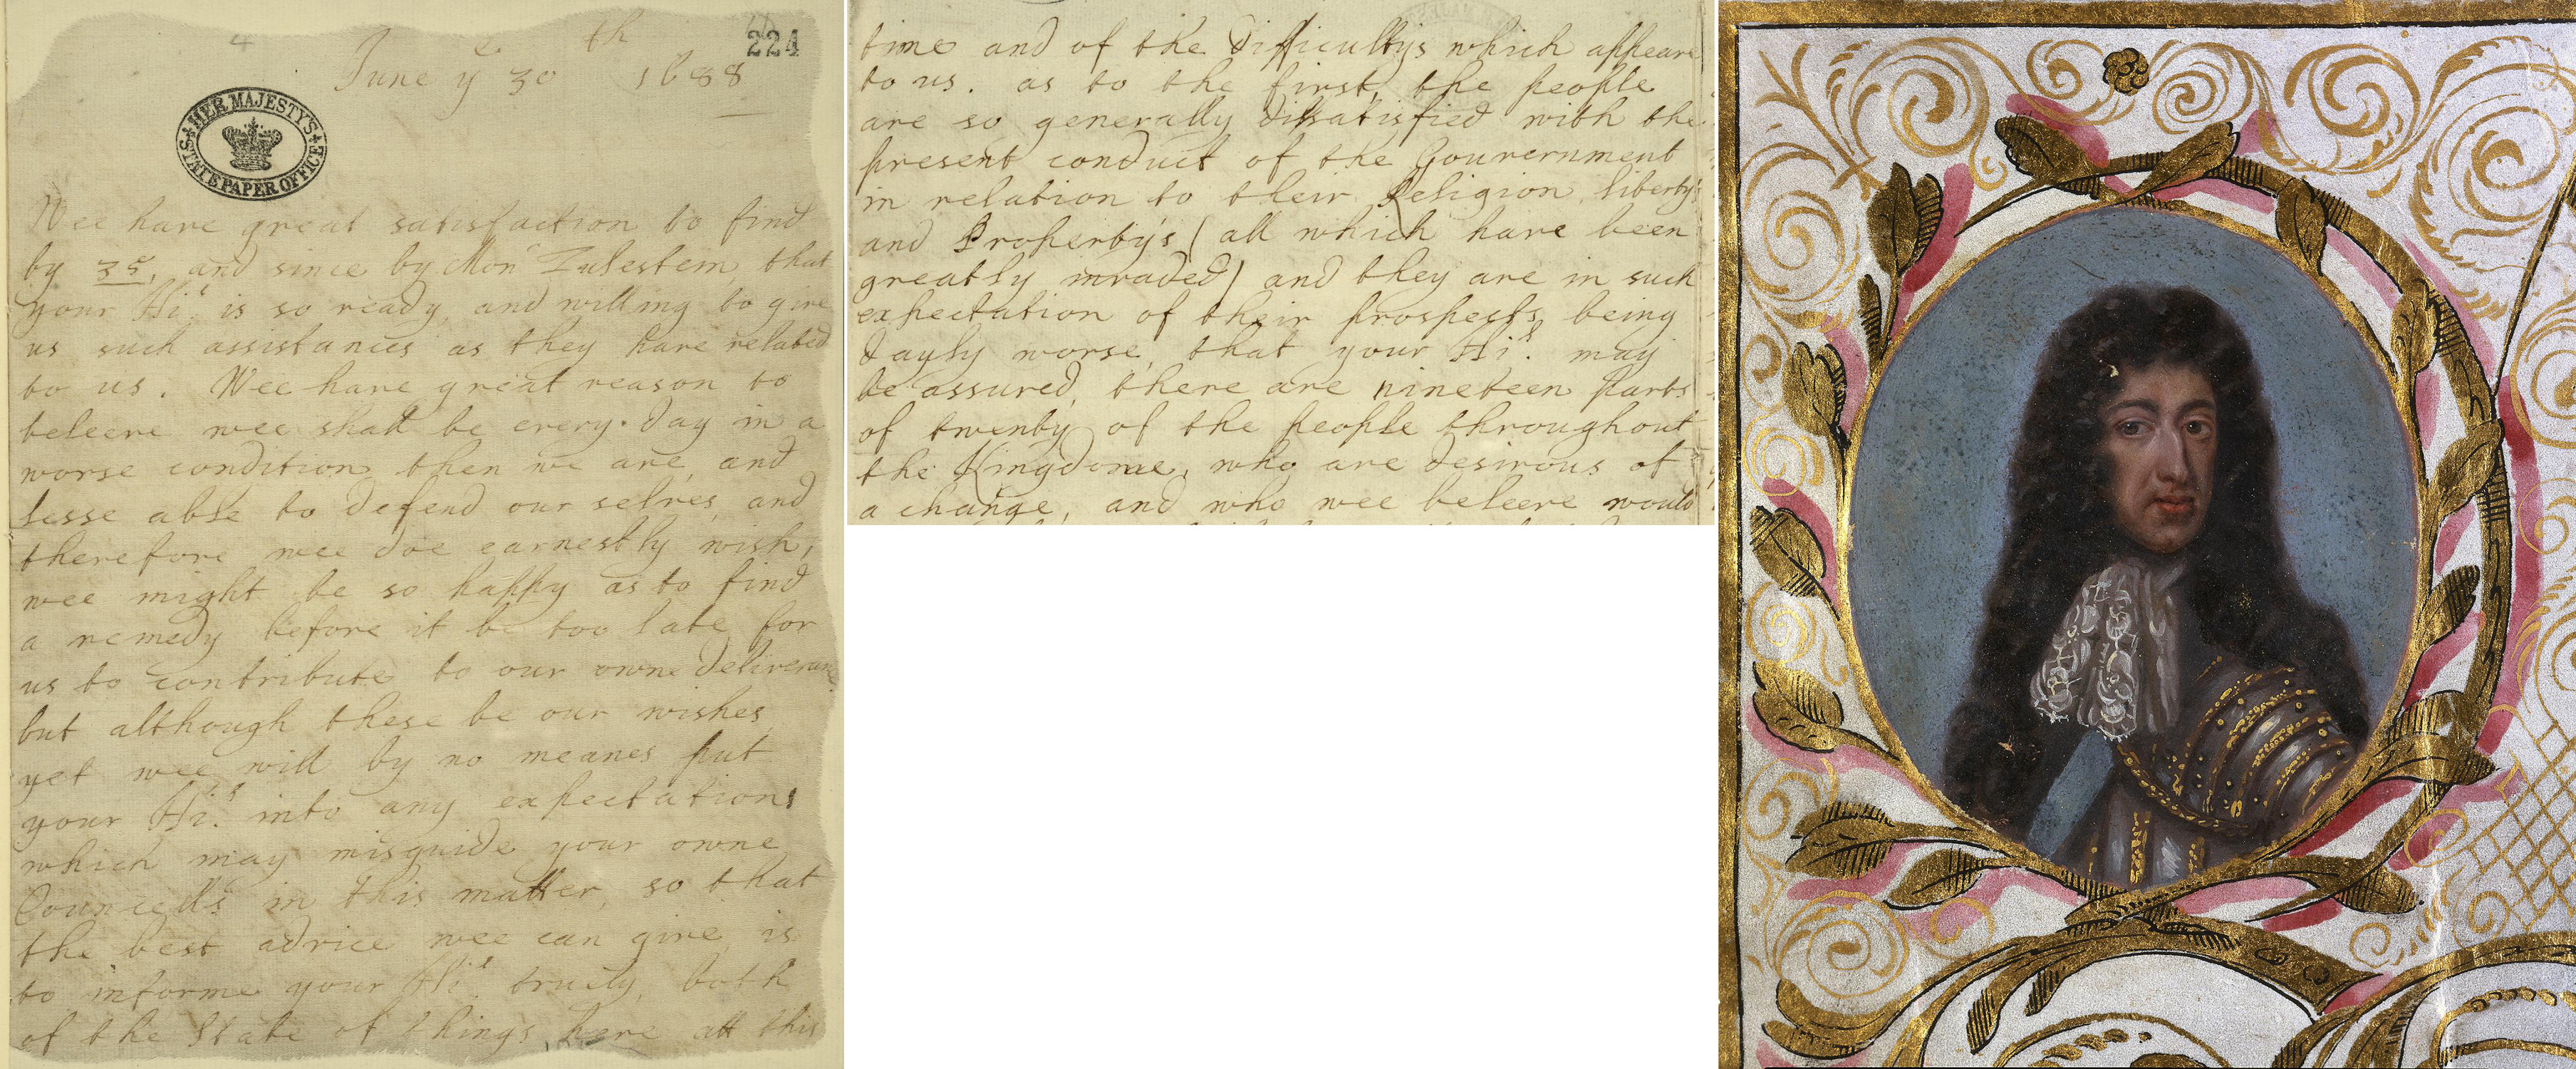 SP8/1 (224) Letter of invitation to William of Orange, 1688